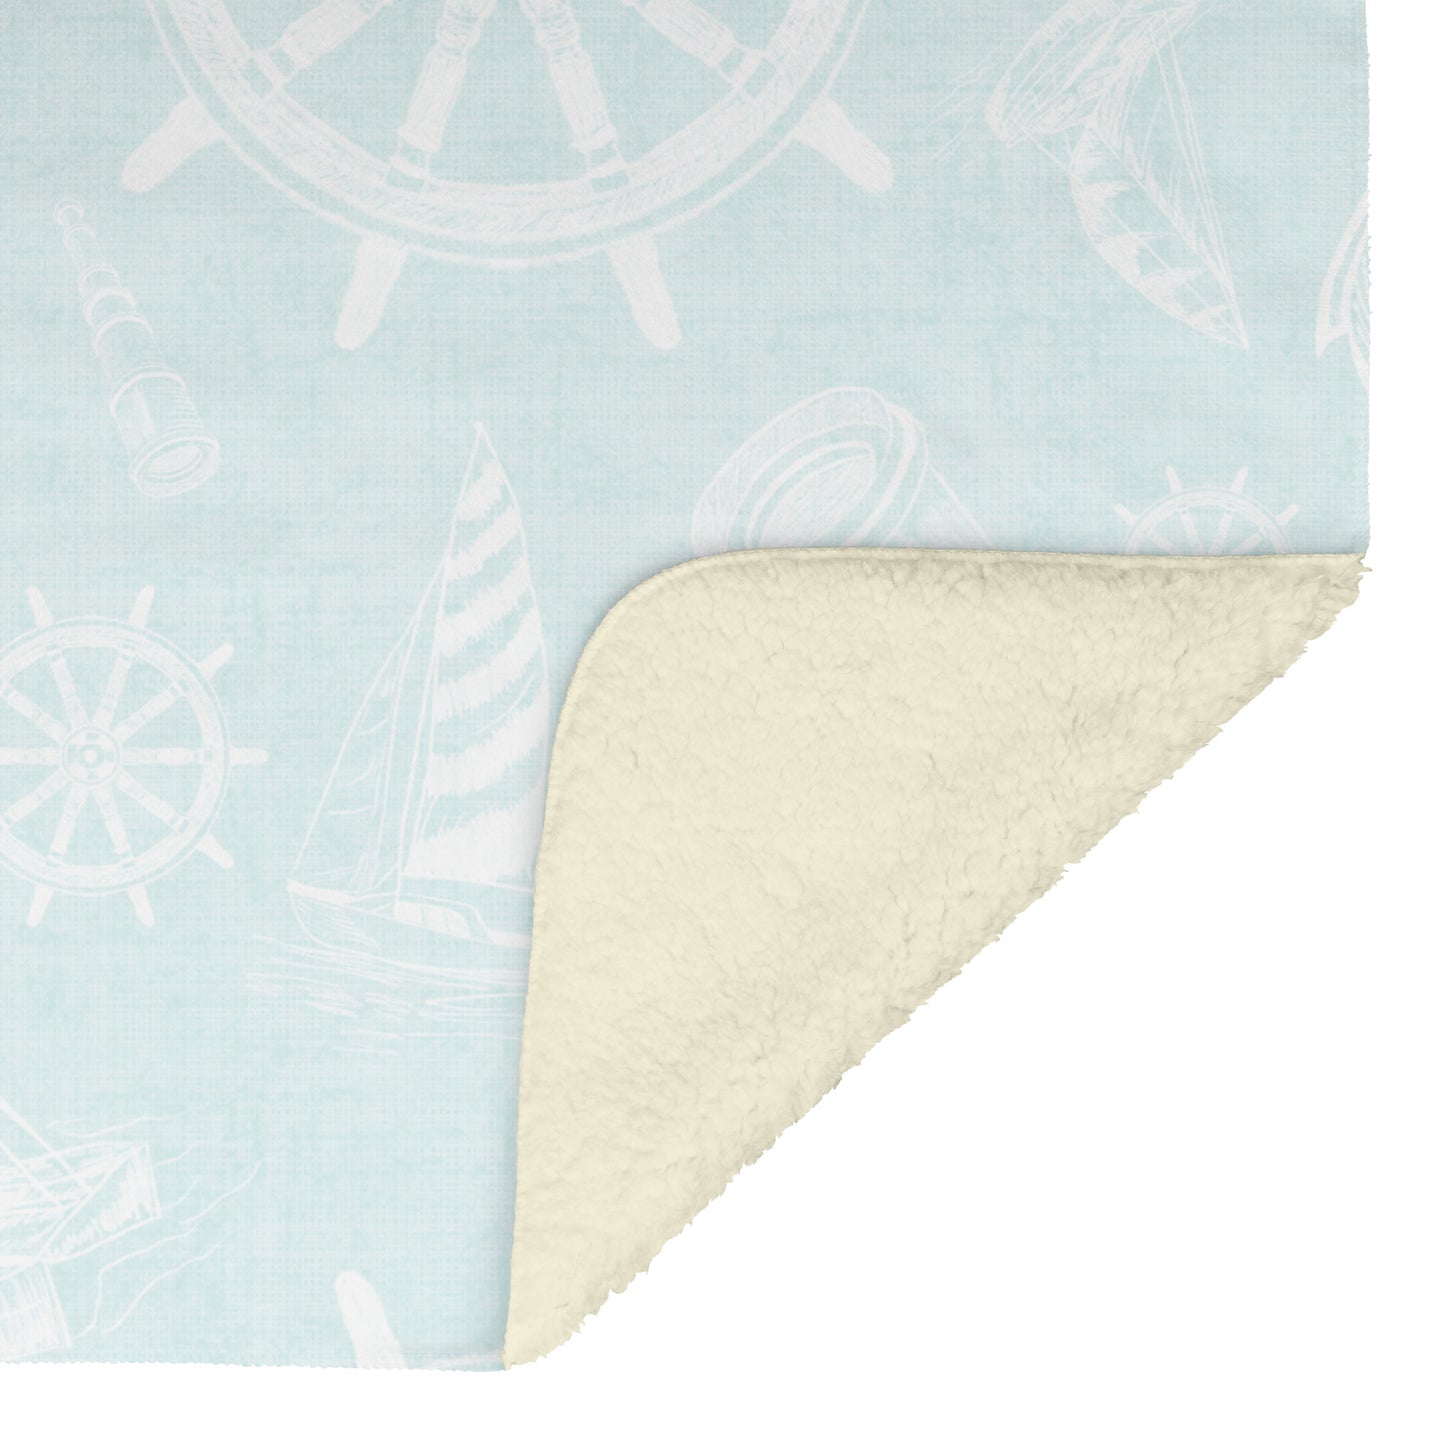 Nautical Sketches on Mist Linen Texture Background, Fleece Blanket